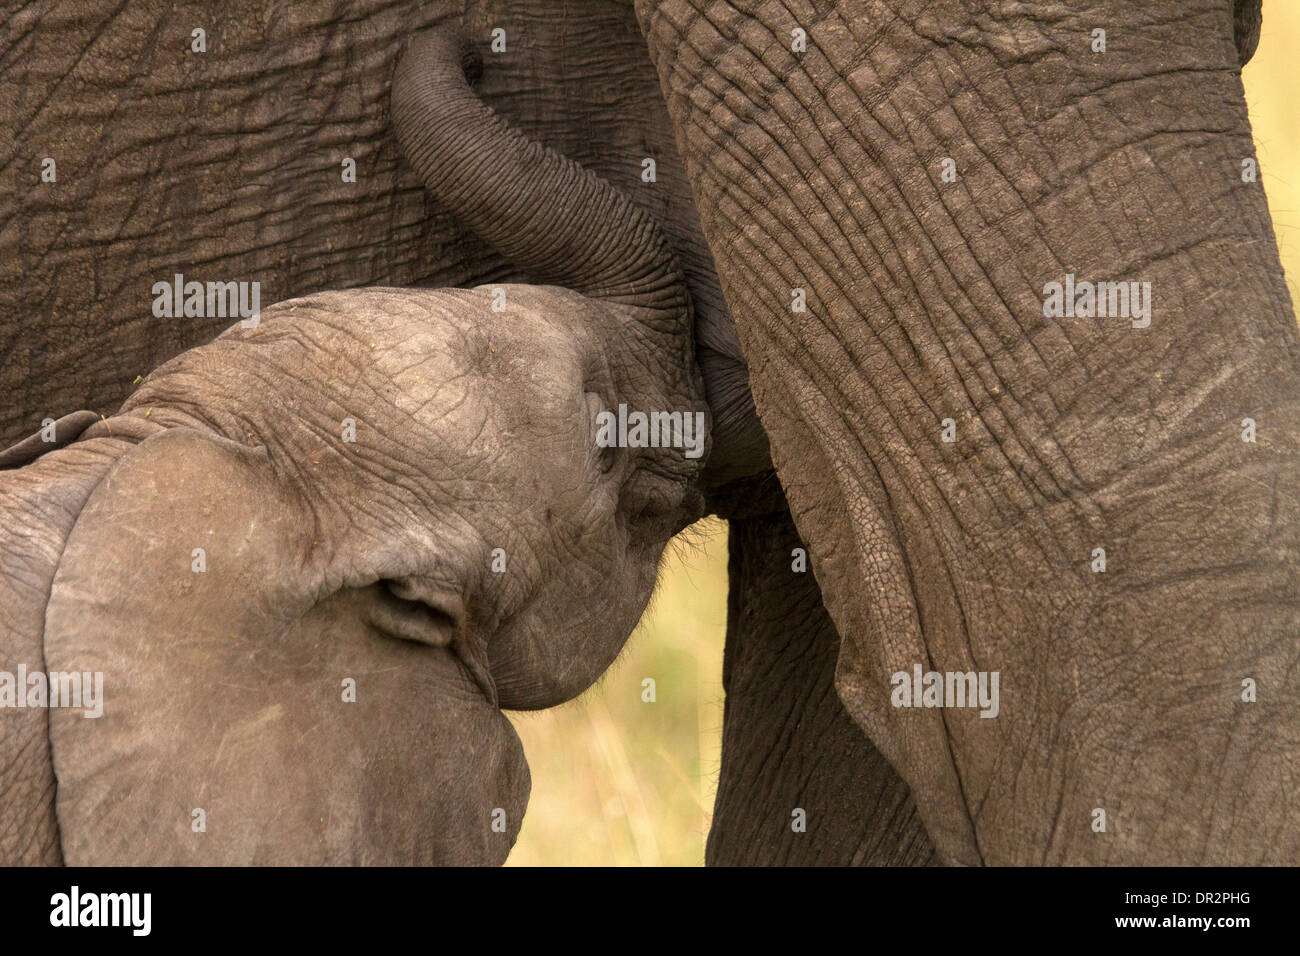 Elefante joven, Loxodonta africana alimentar con un adulto Foto de stock